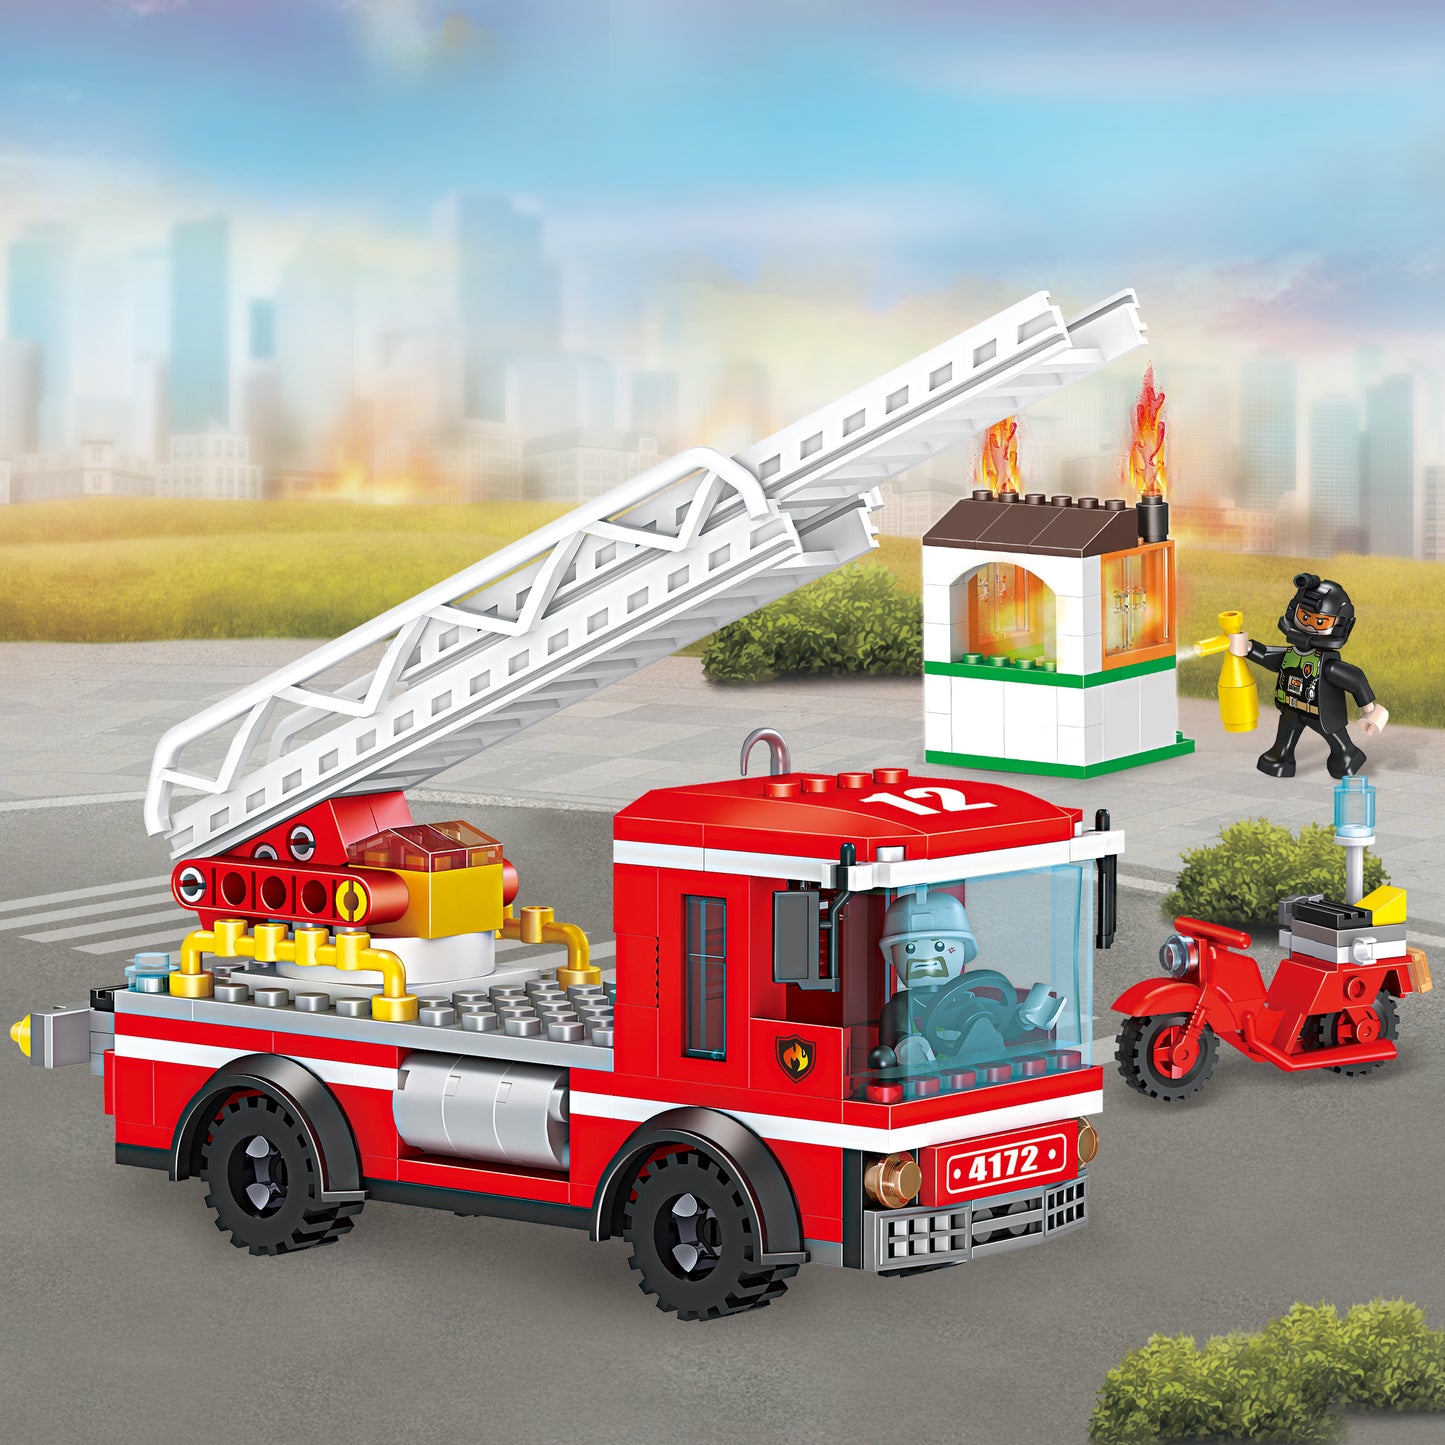 消防系列小颗粒积木-云梯消防车/260PCS,配2只公仔,不带灯